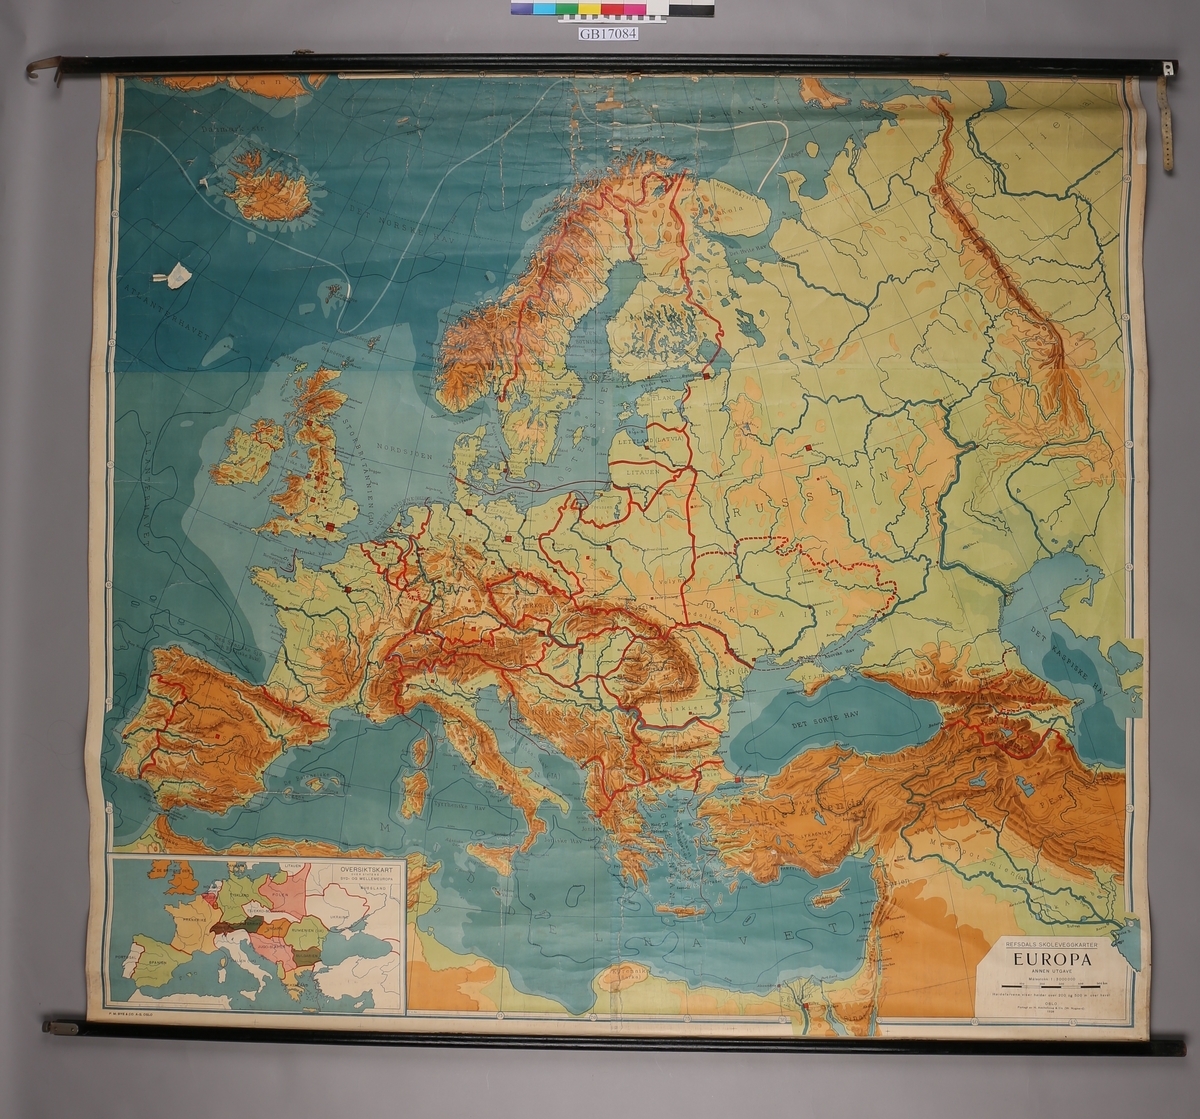  Kart over Europa.